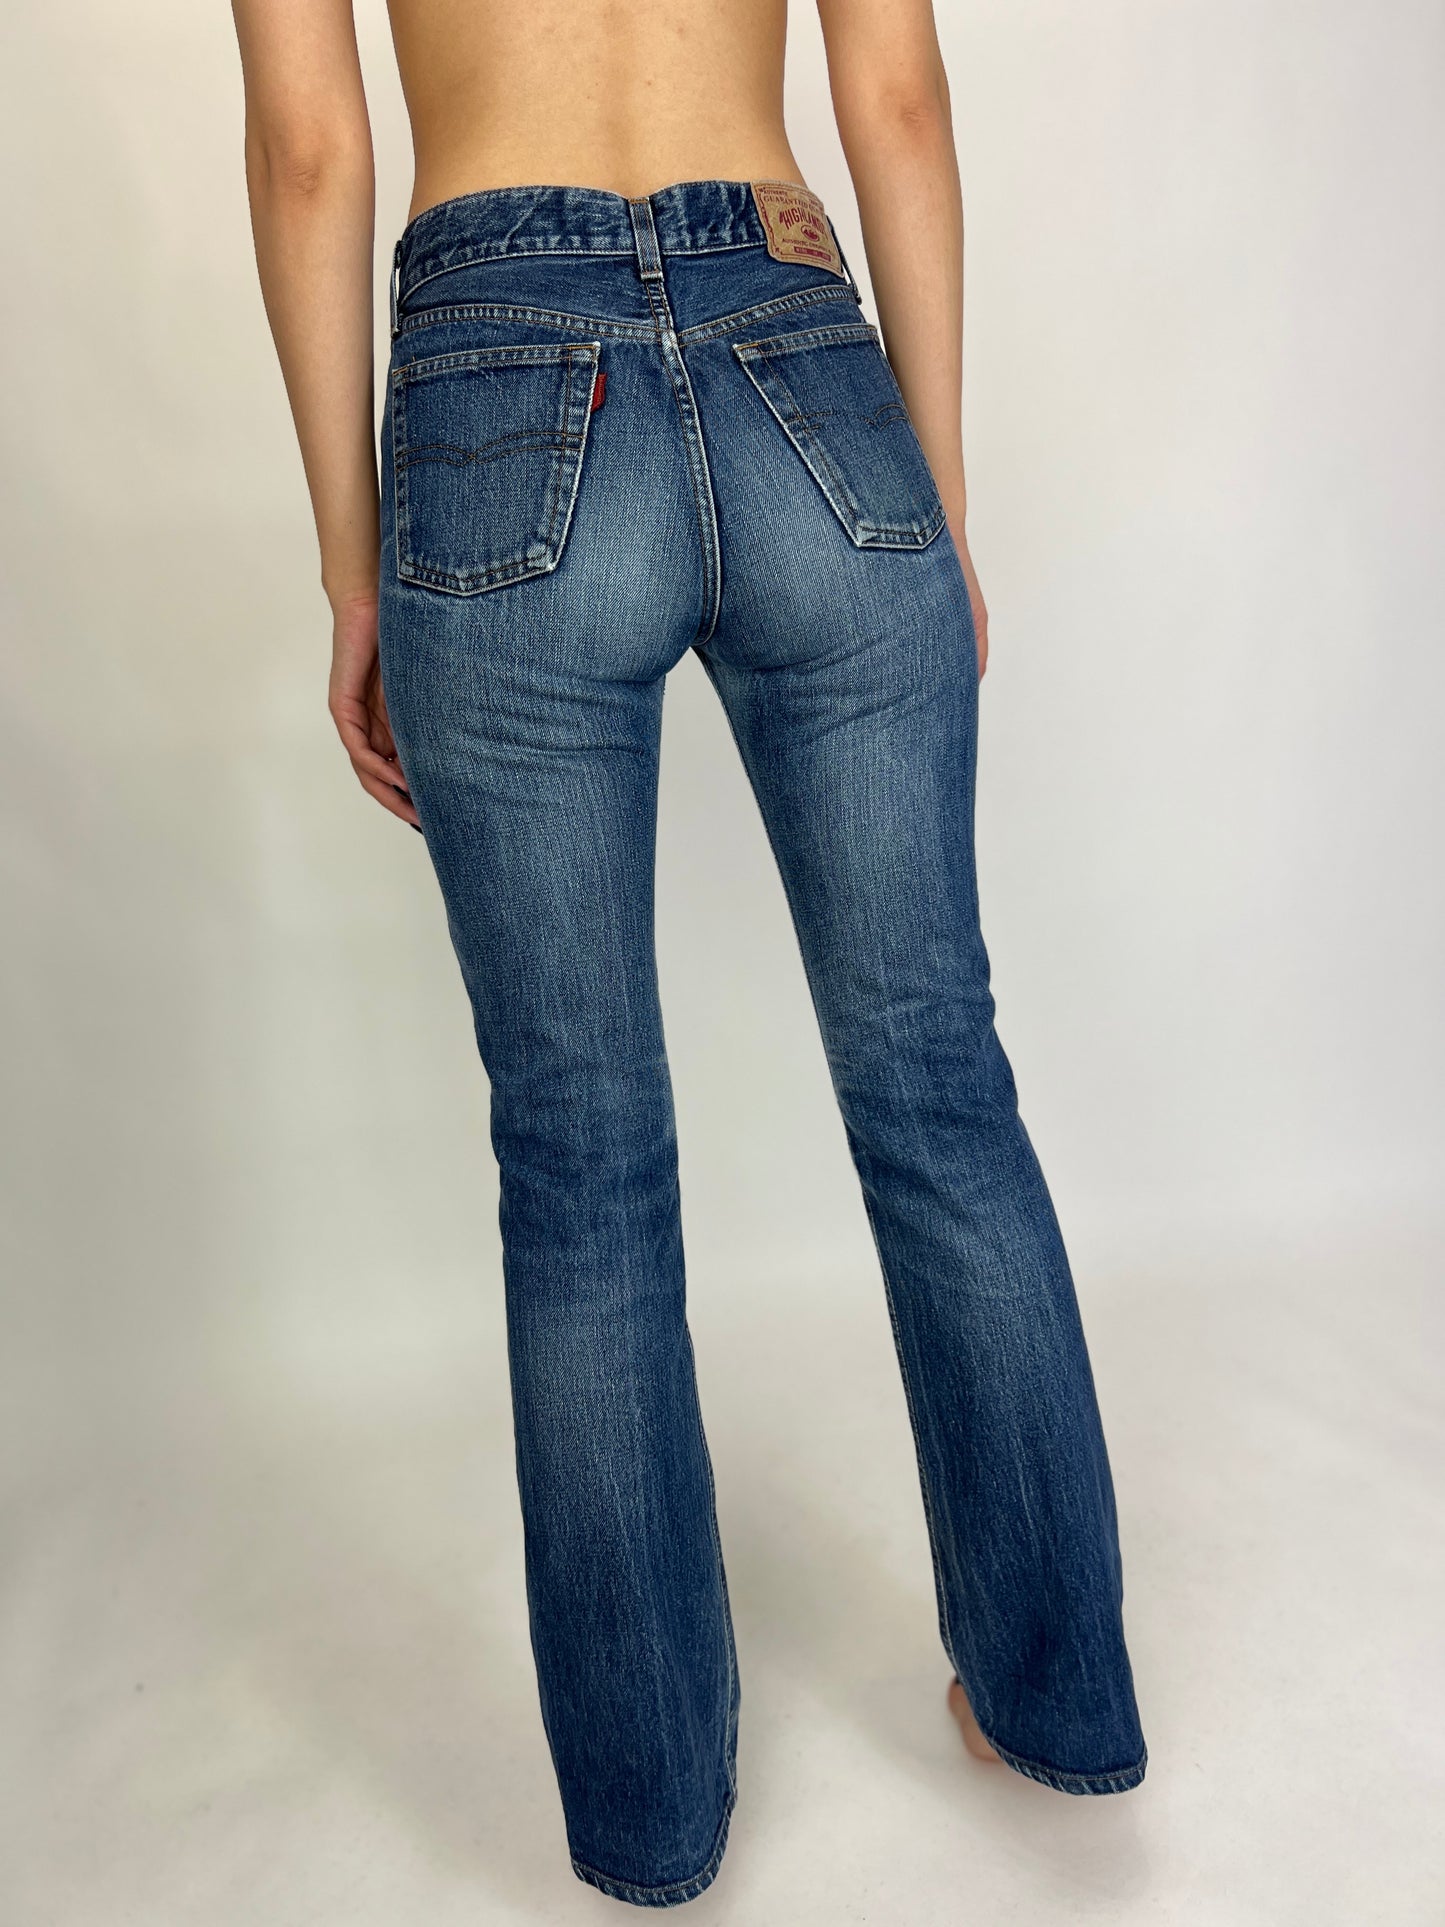 Jeanși premium cu talie mai joasă în față bumbac plin